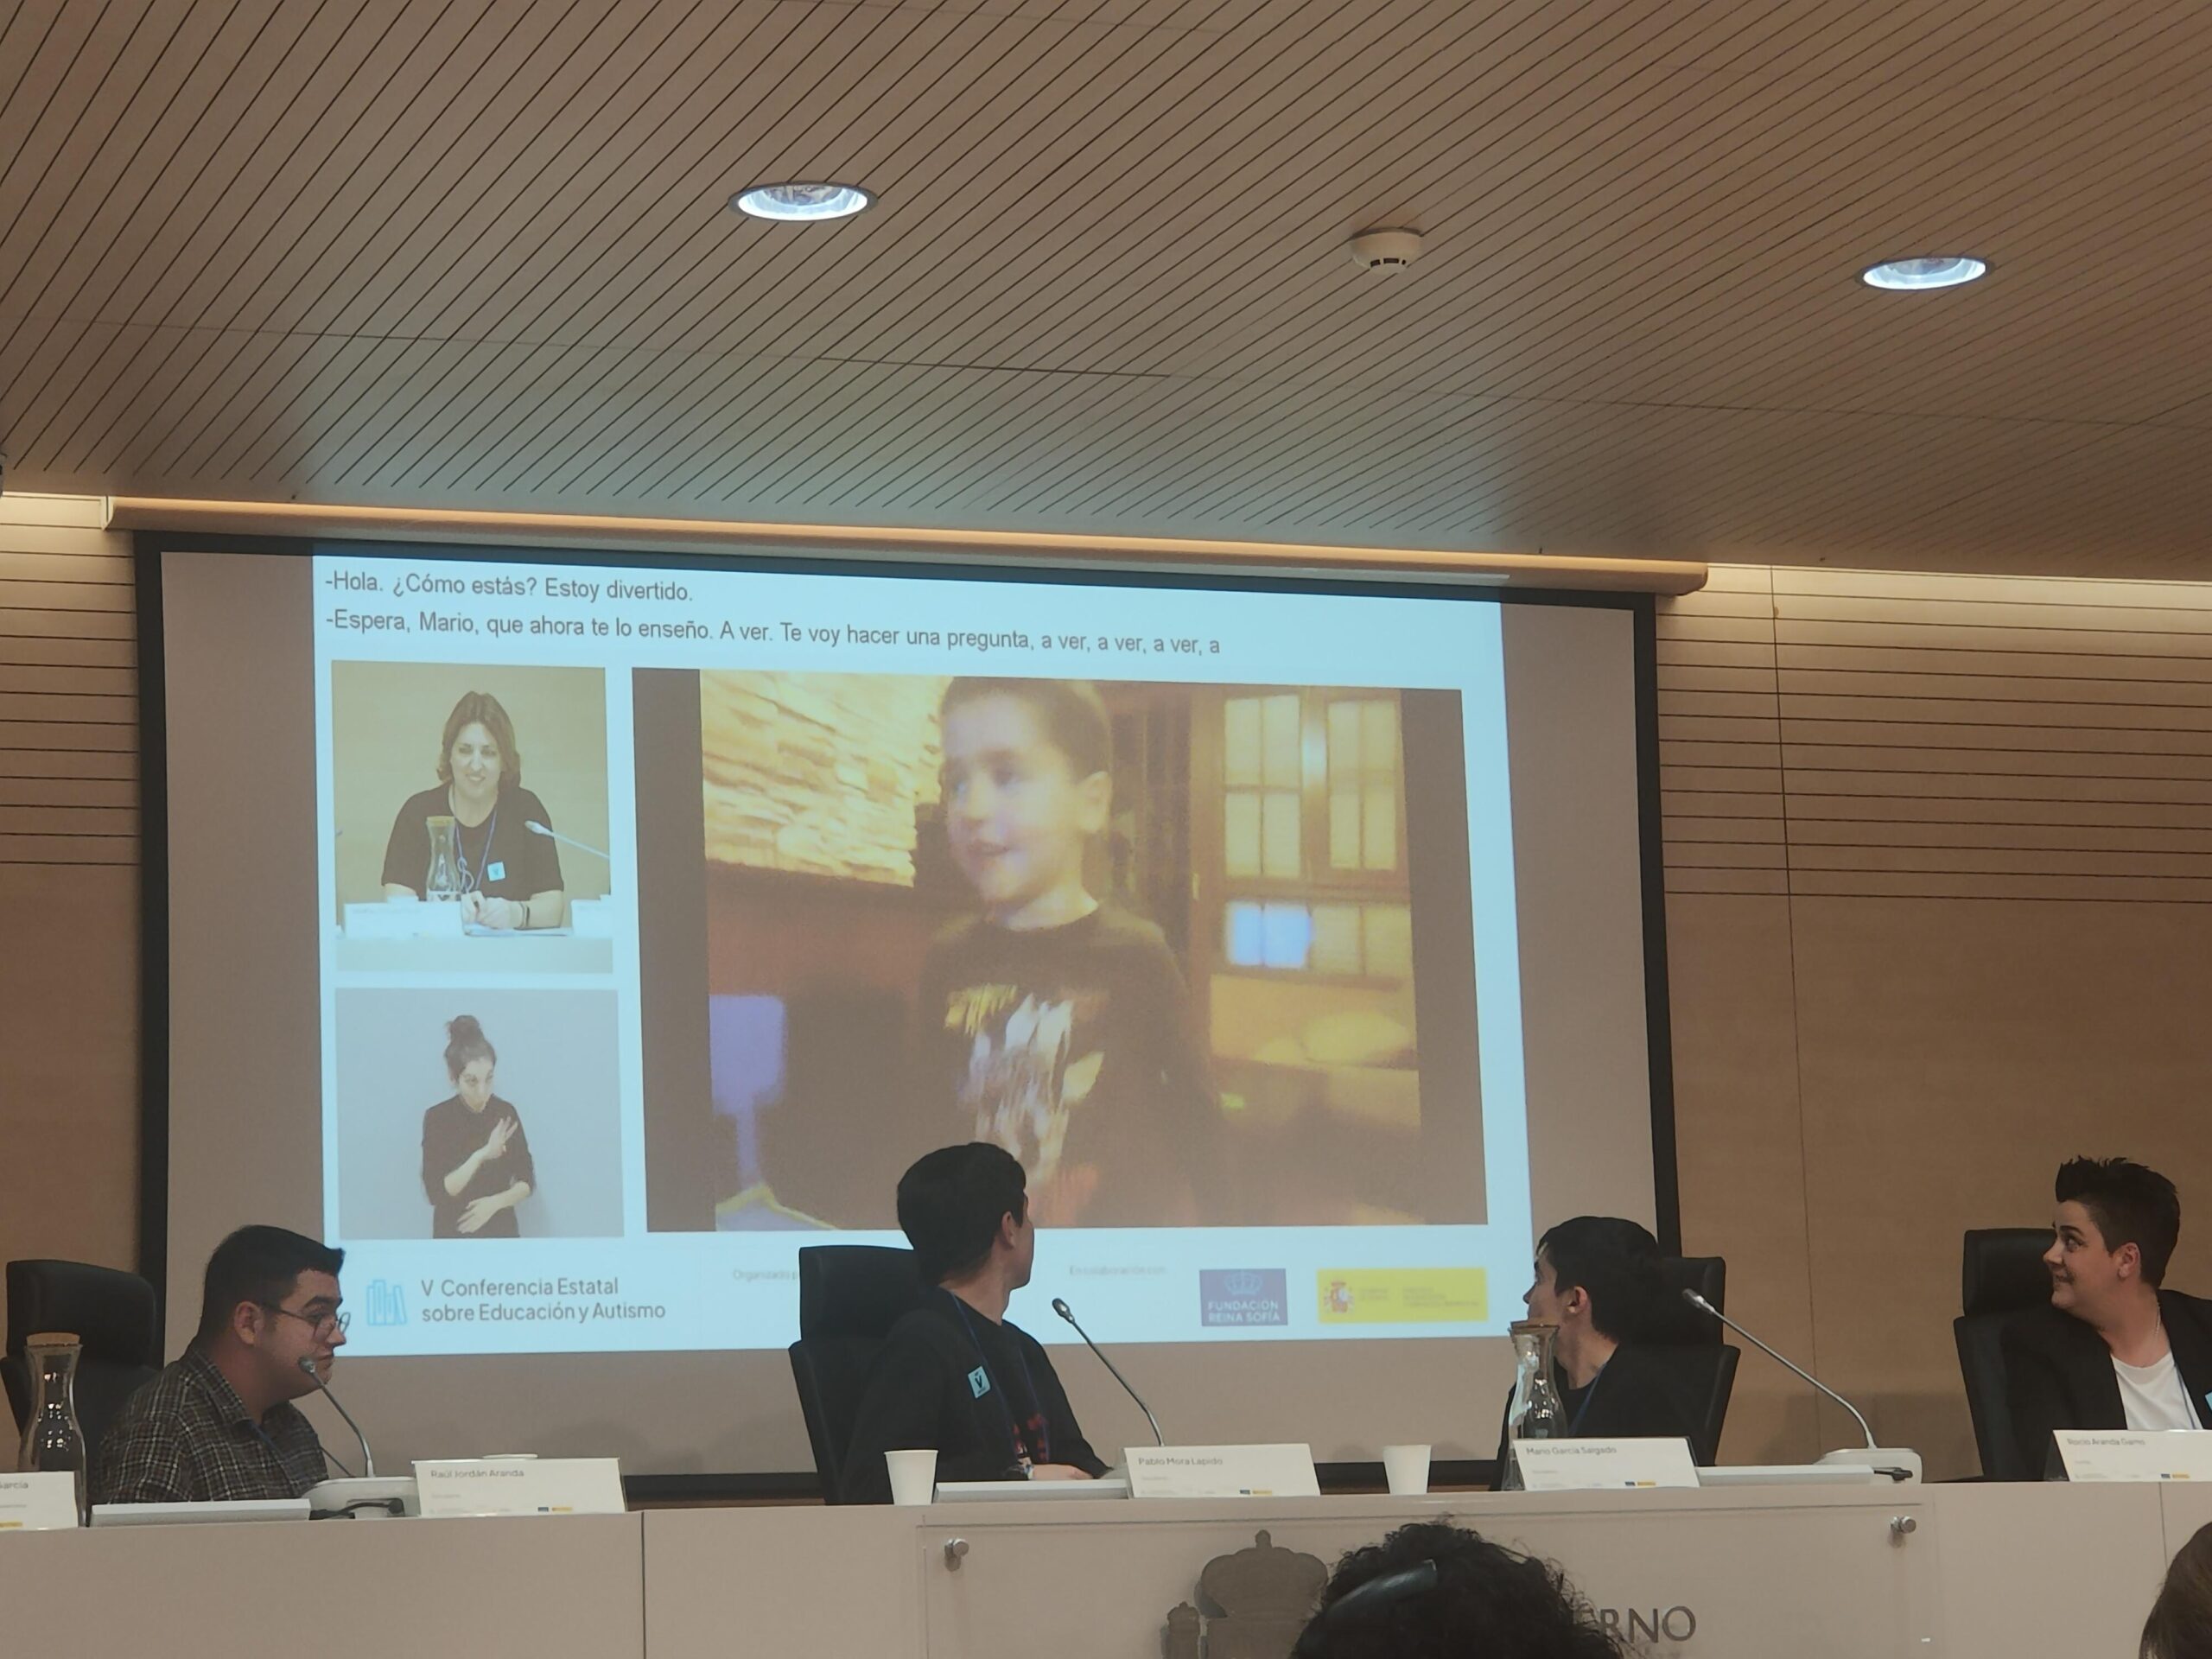 Foto de la ponencia donde se ve una diapositiva con un vídeo de uno de los chicos de pequeño